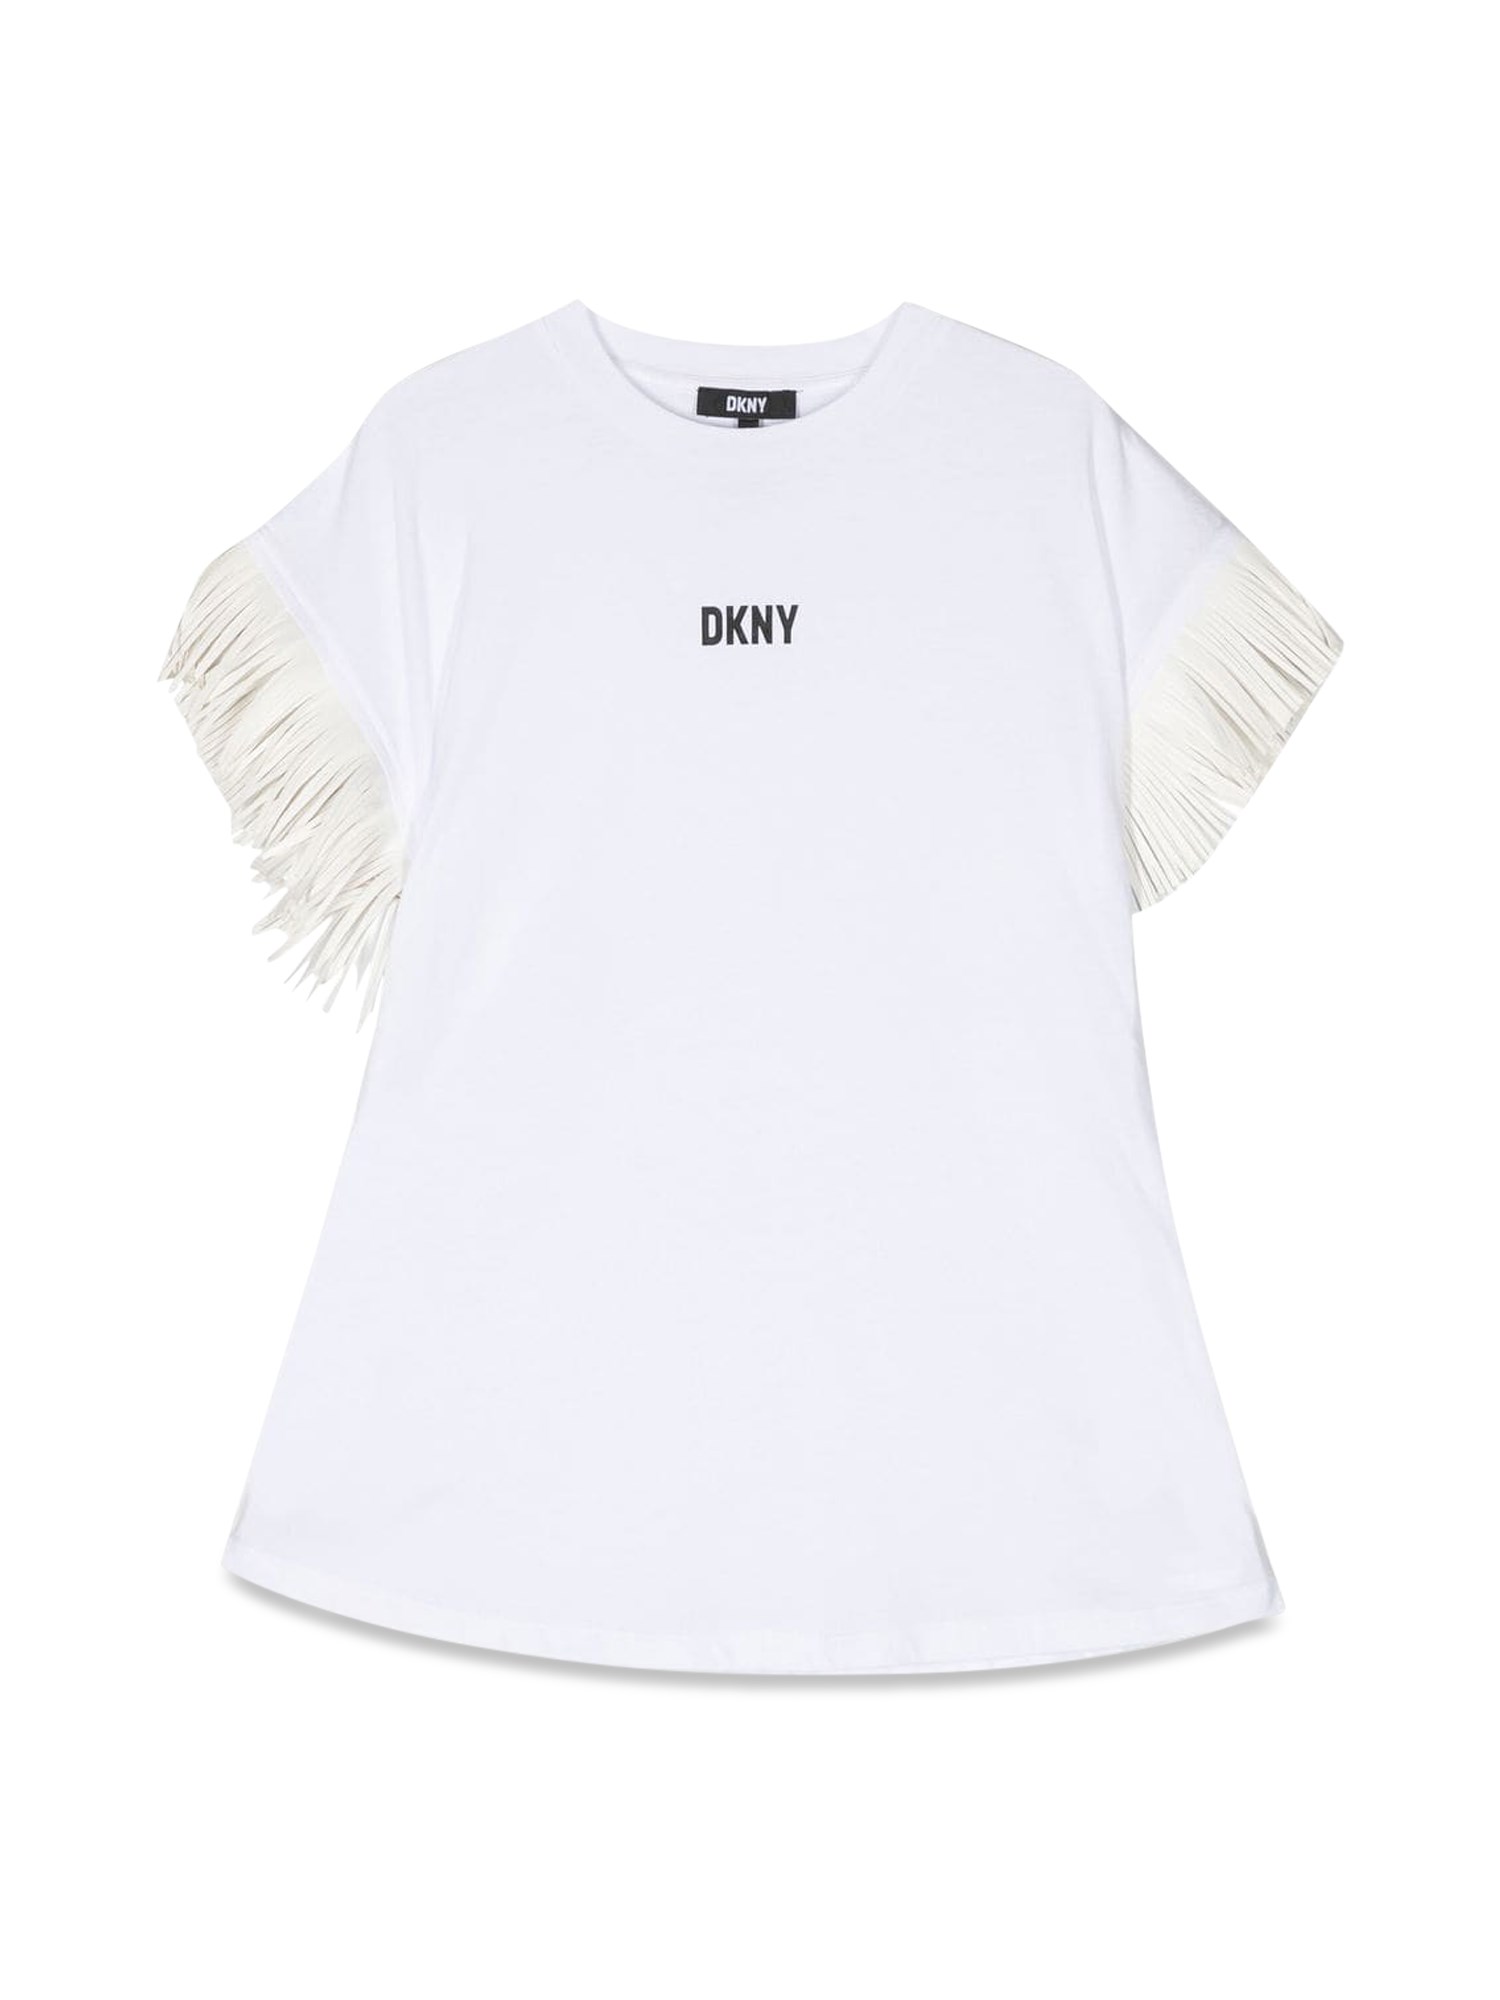 dkny logo dress frayed sleeves